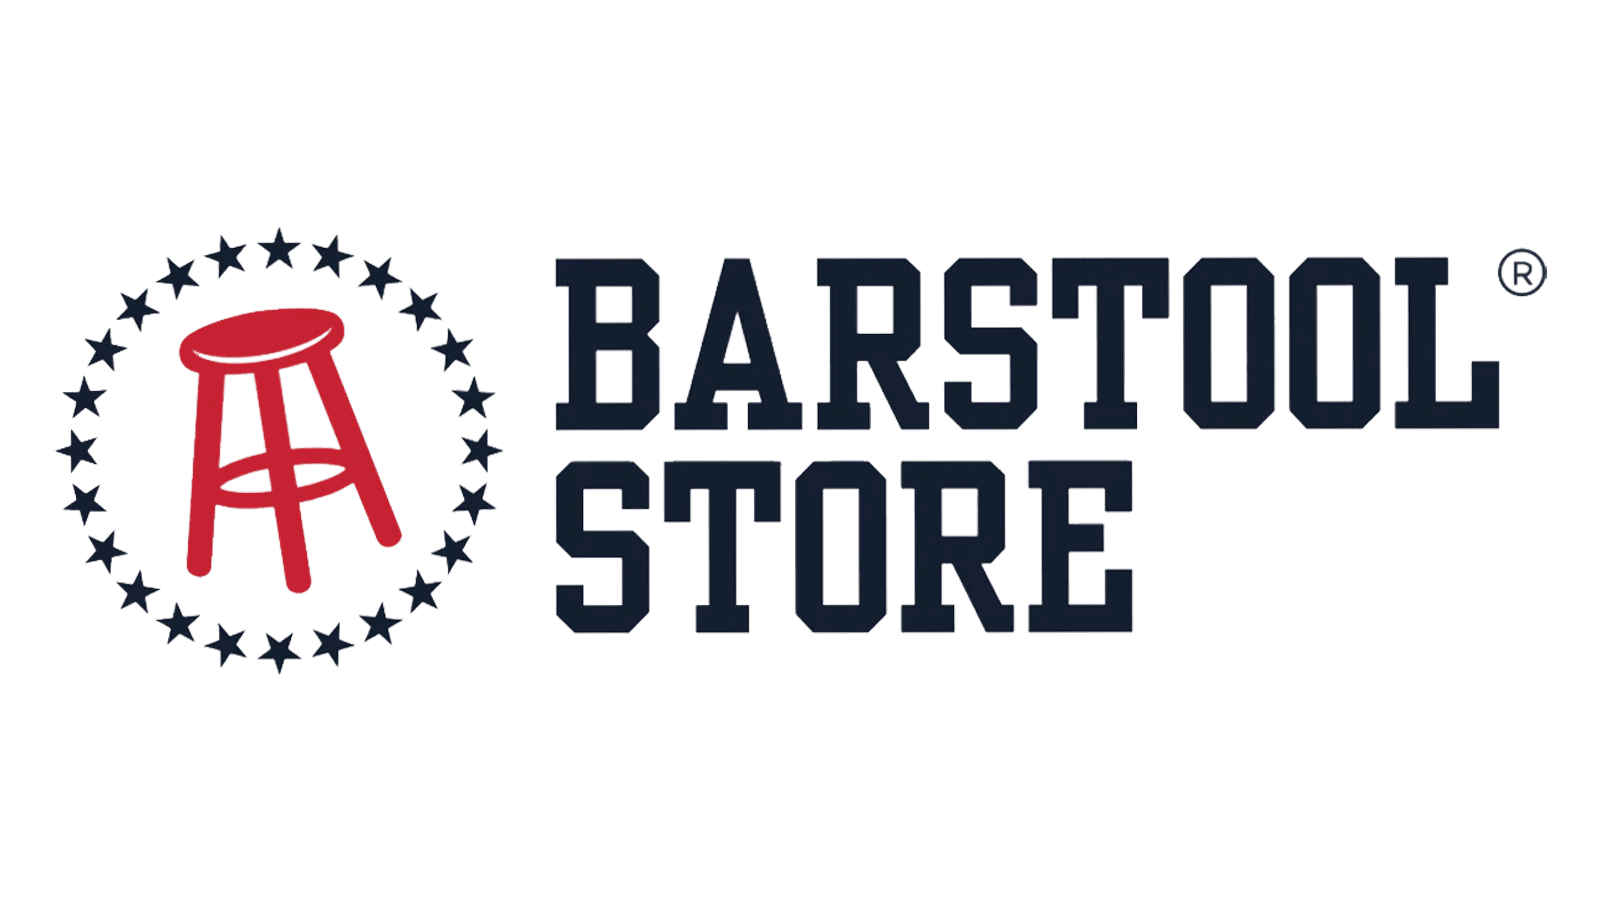 Barstool Store